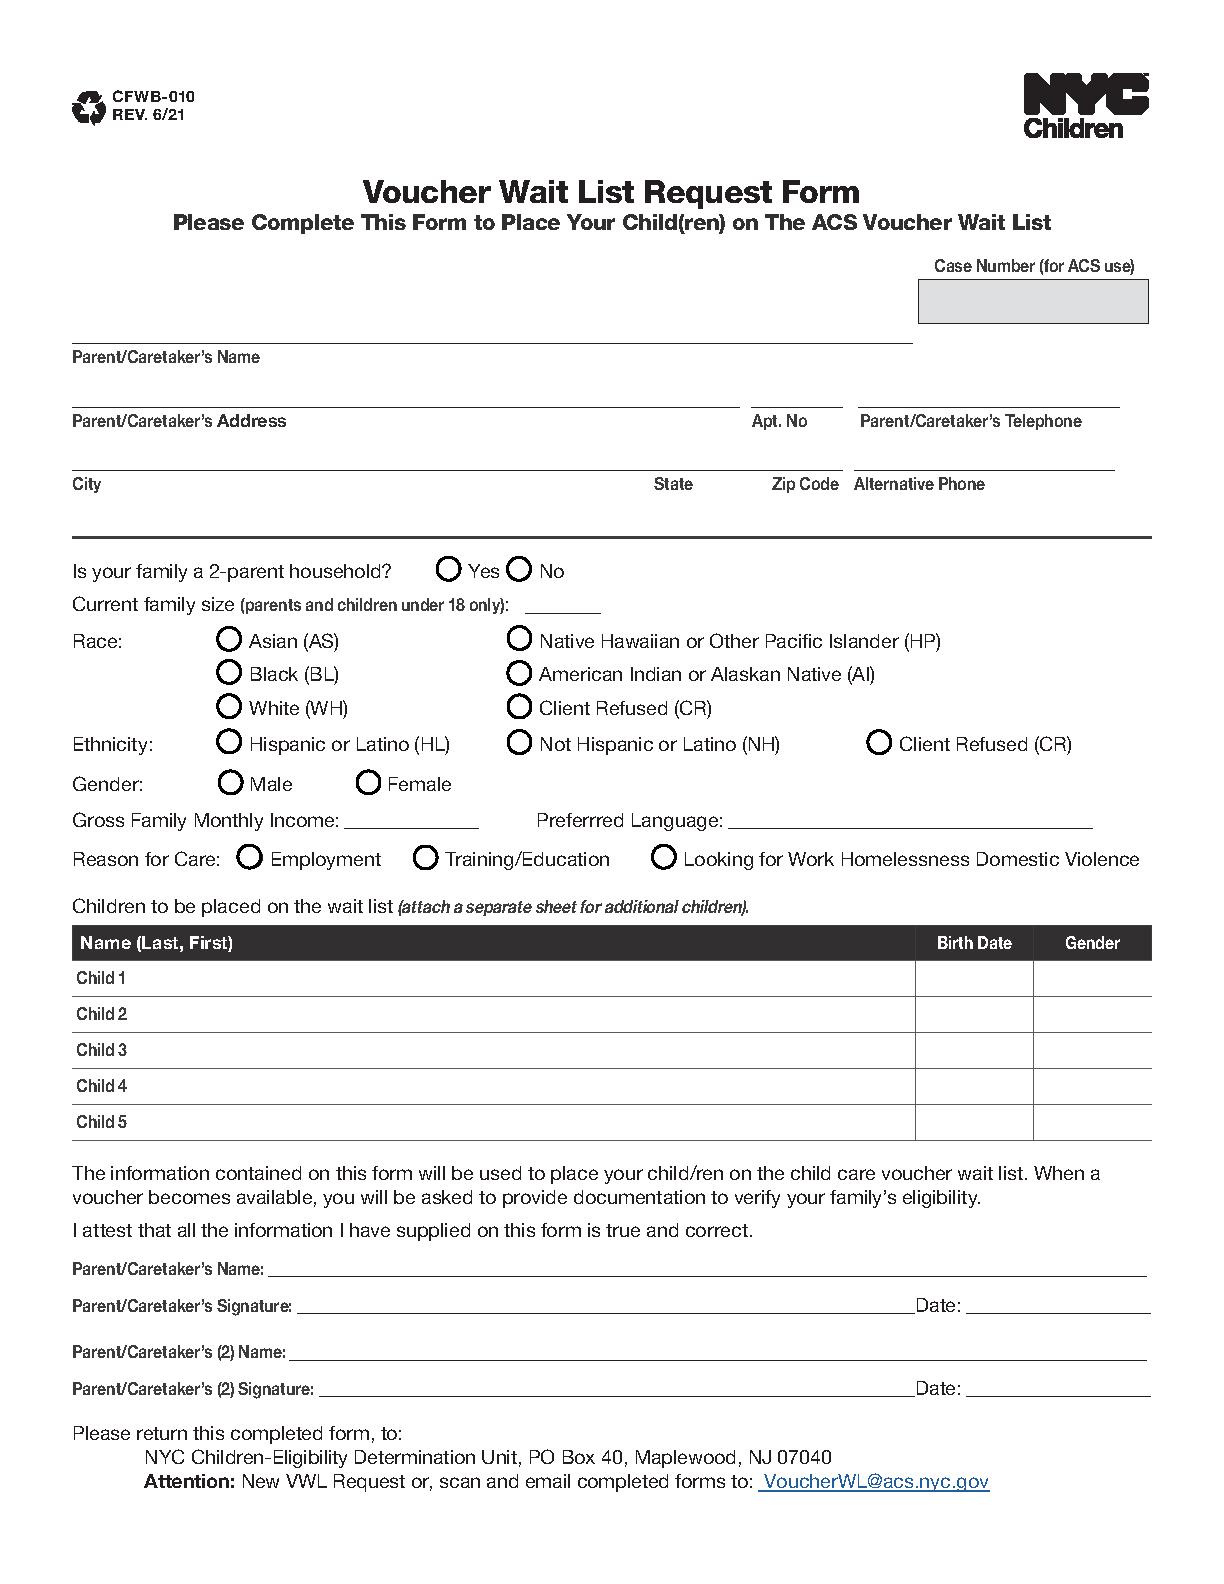 cfwb-010-voucher-wait-list-request-form-pdf-host